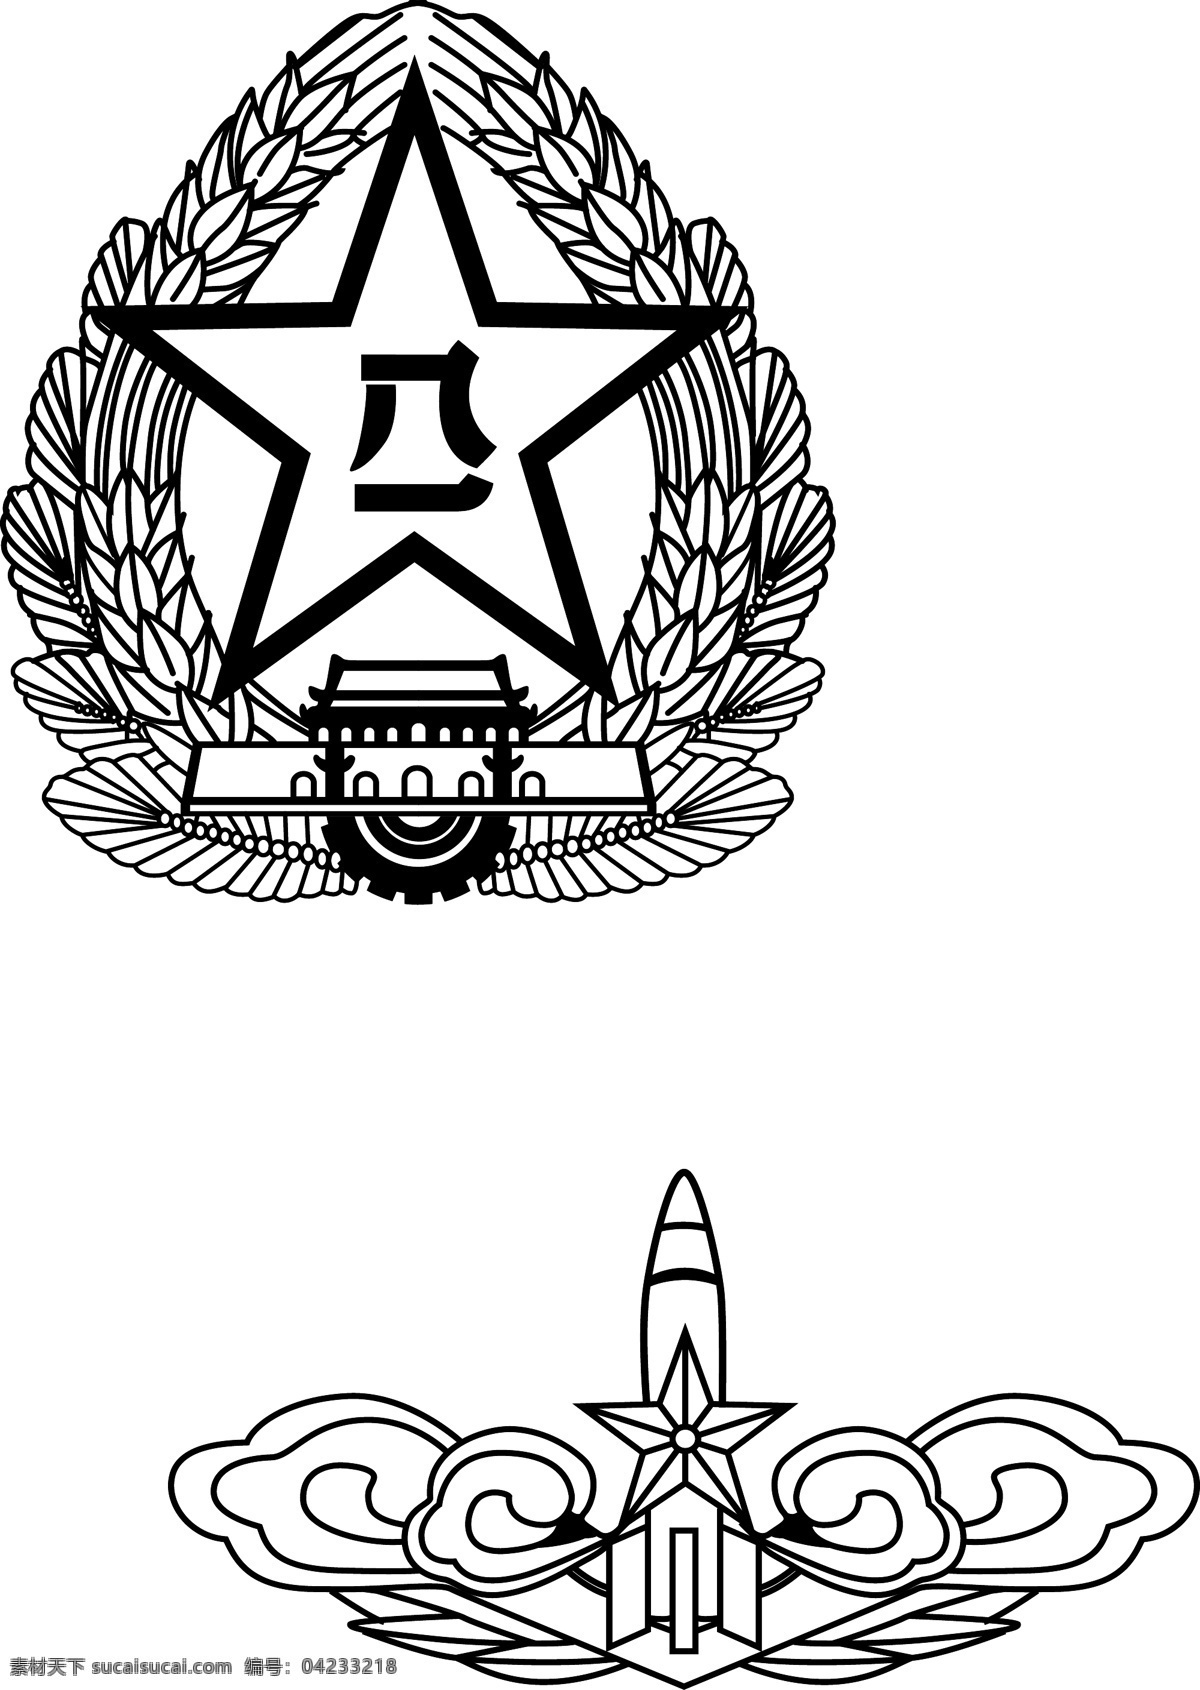 八一火箭 军徽 标志 八一火箭军徽 八一标志 火箭标志 火箭国徽 八一国徽